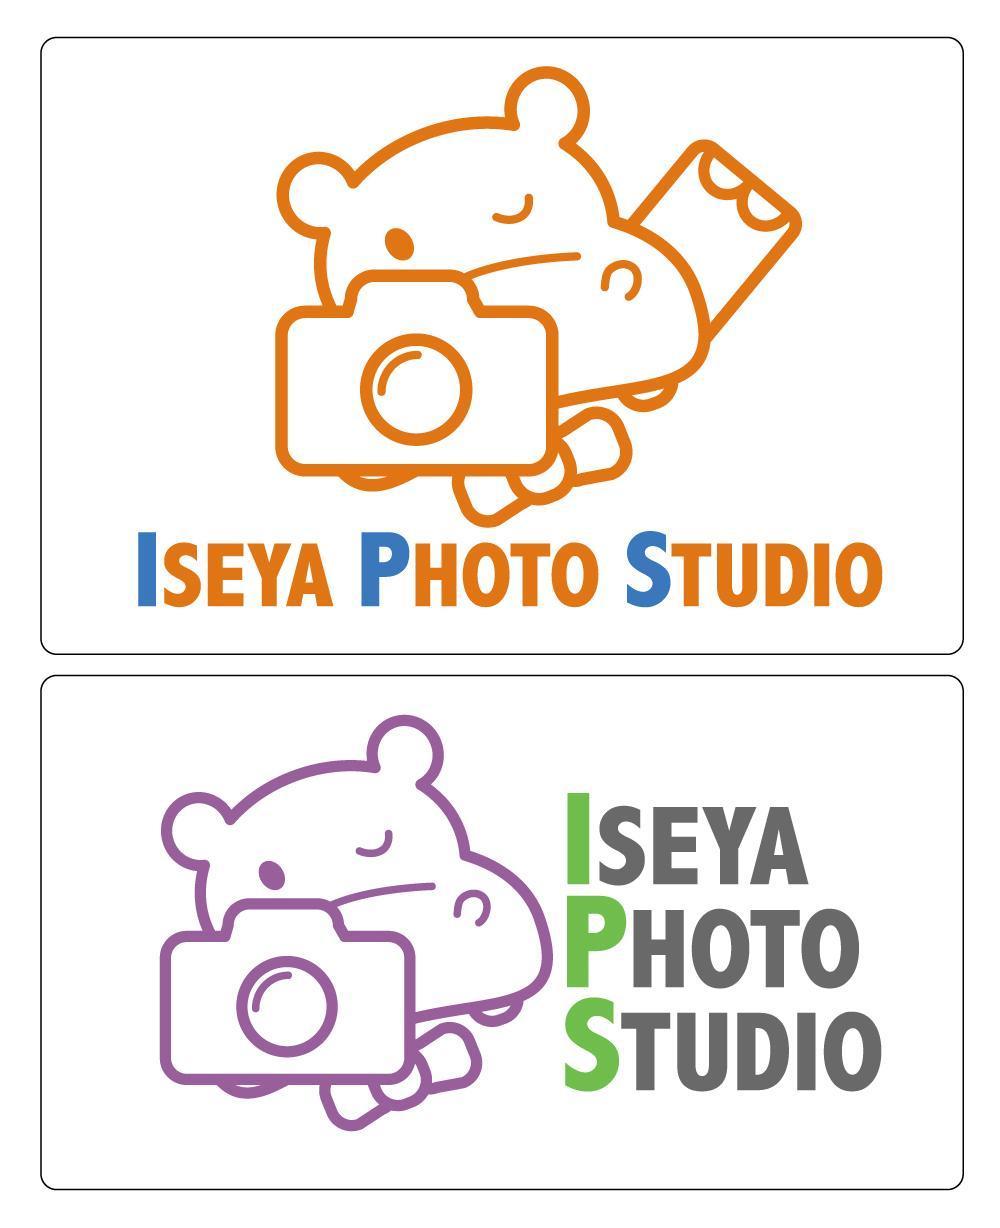 ISEYA-PHOTO-STUDIO.jpg